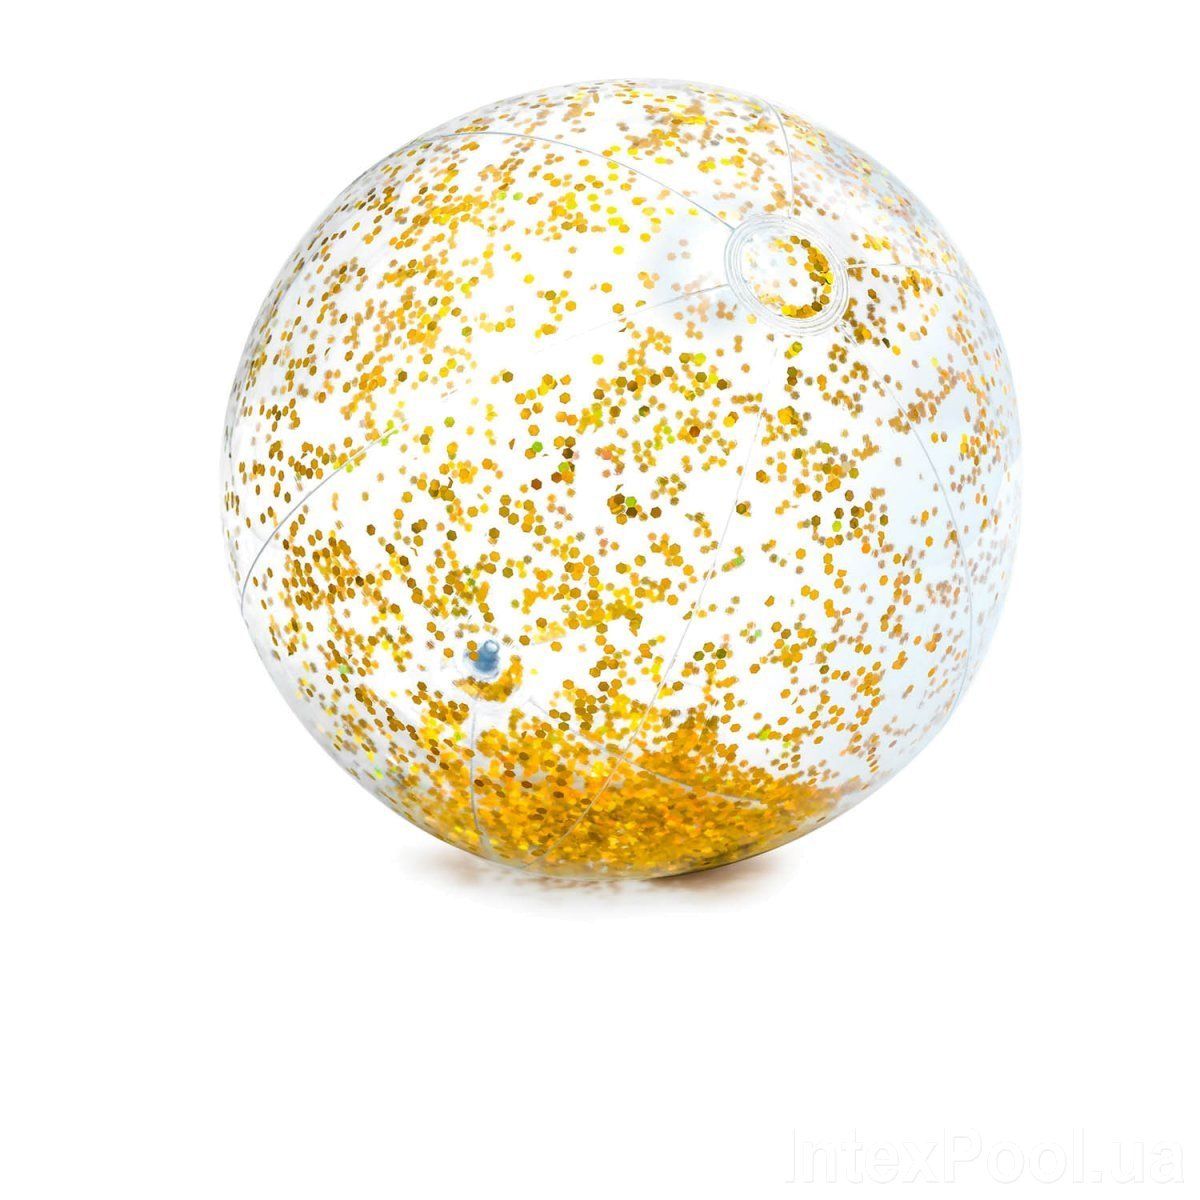 Пляжный мячик "Glitter" (золотистый)